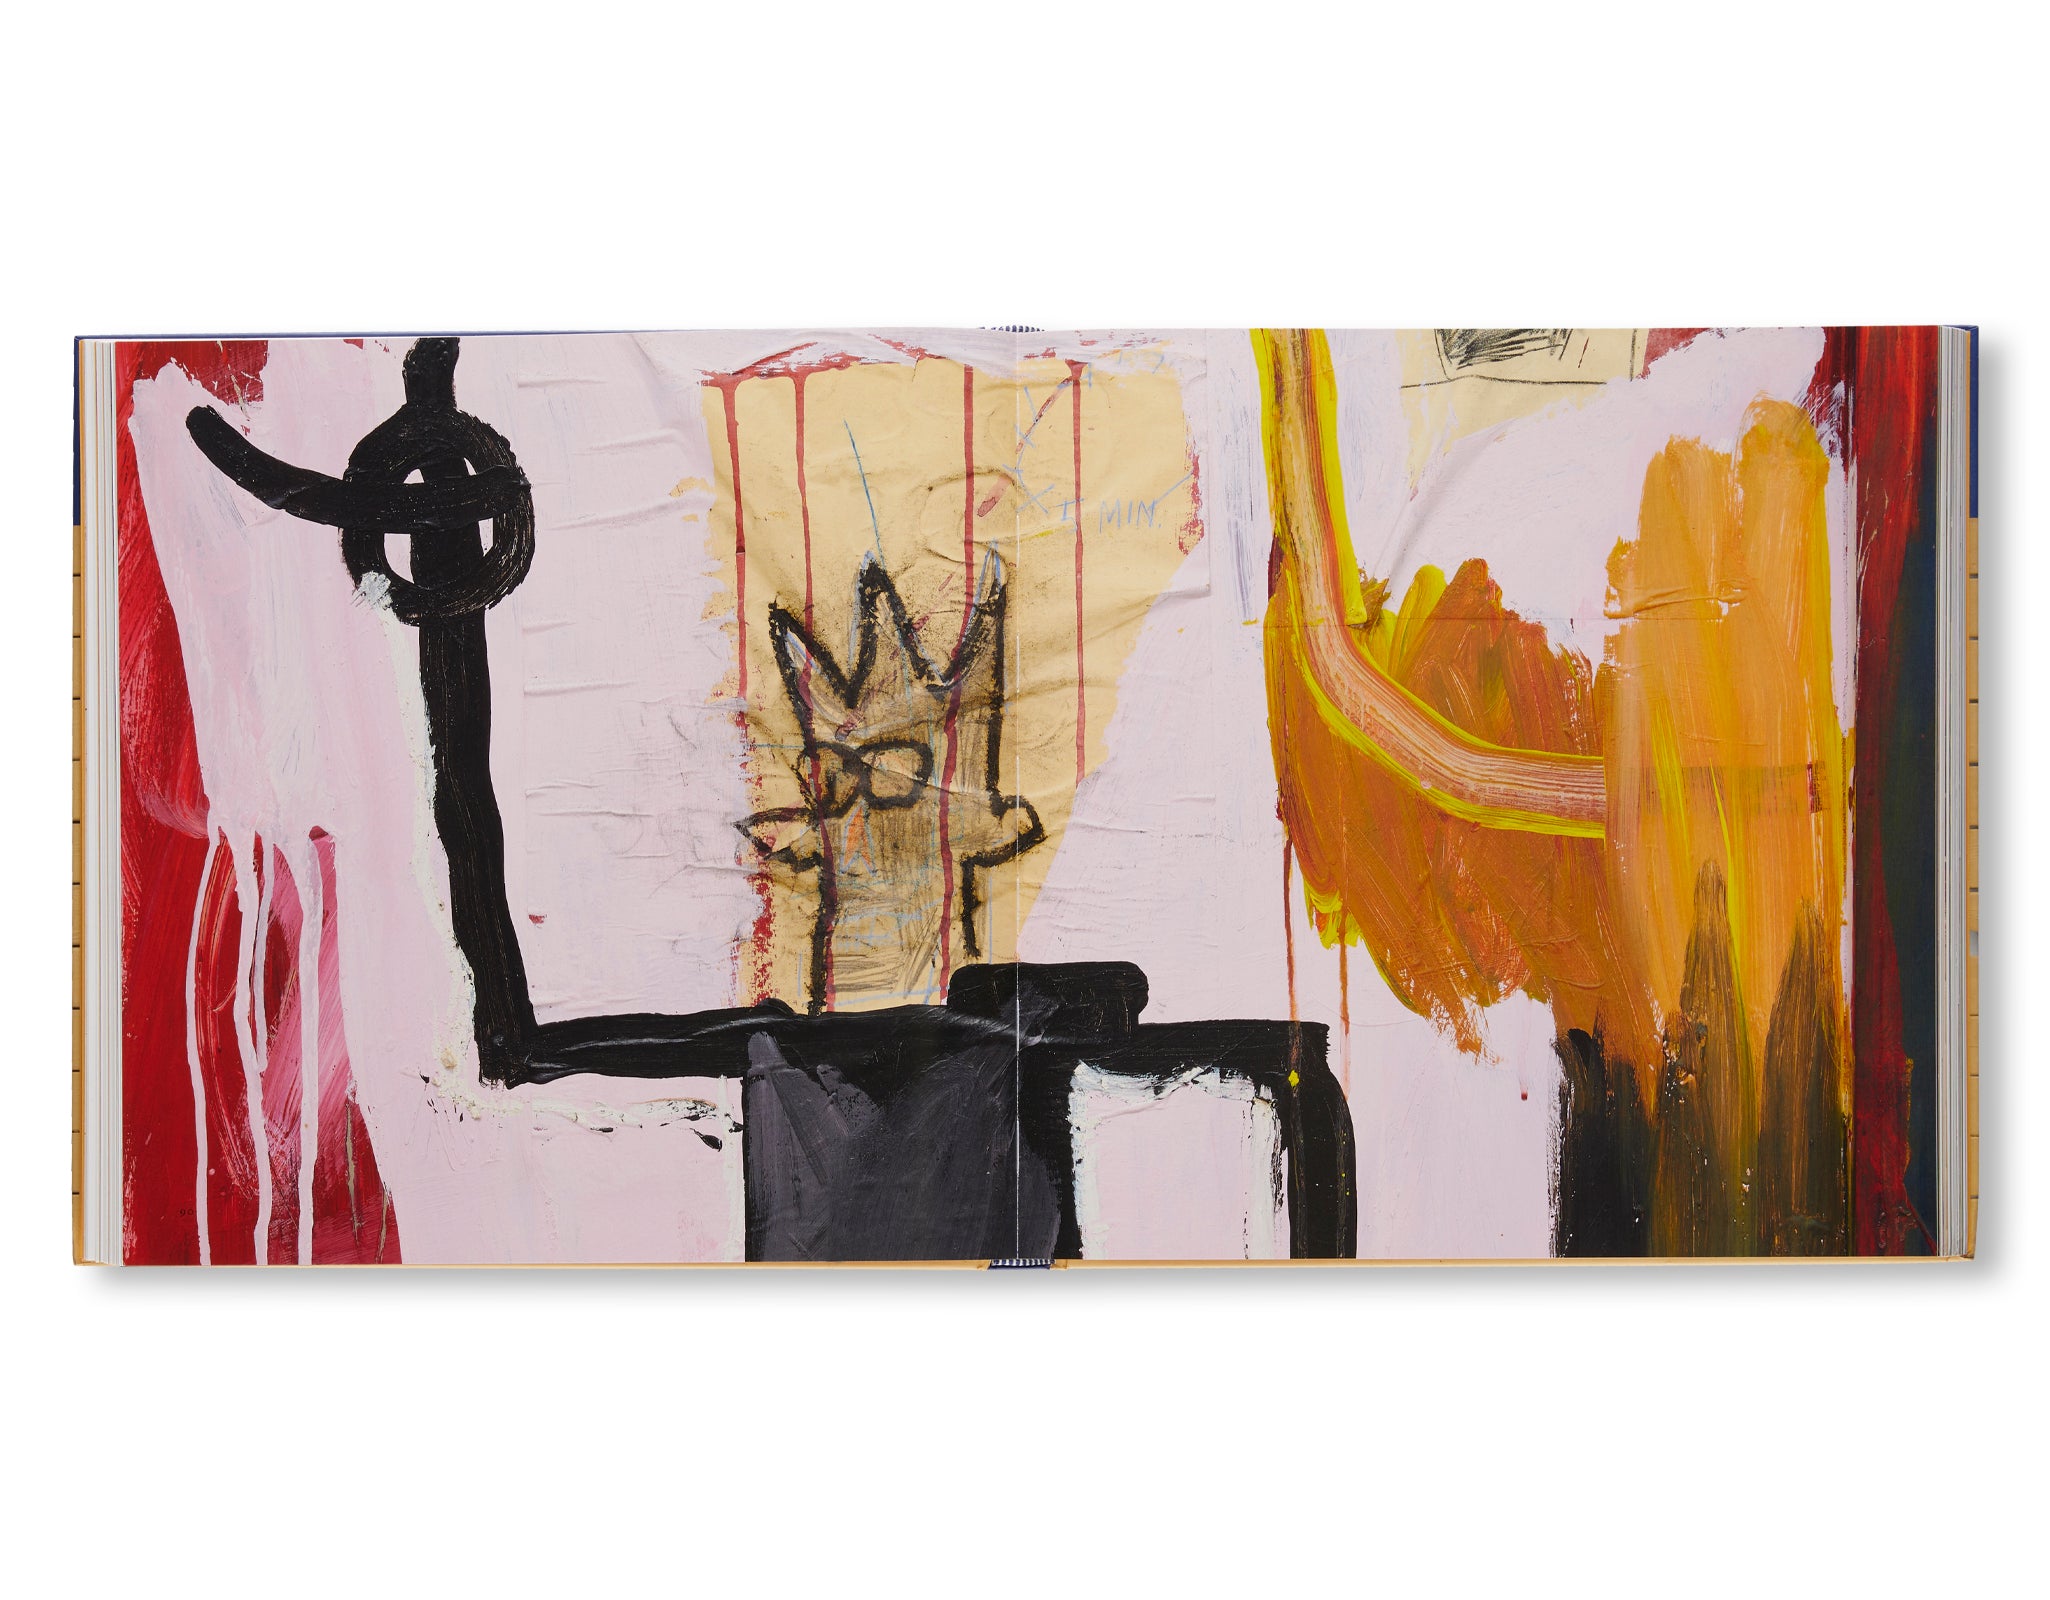 JEAN MICHEL BASQUIAT: ART AND OBJECTHOOD by Jean Michel Basquiat